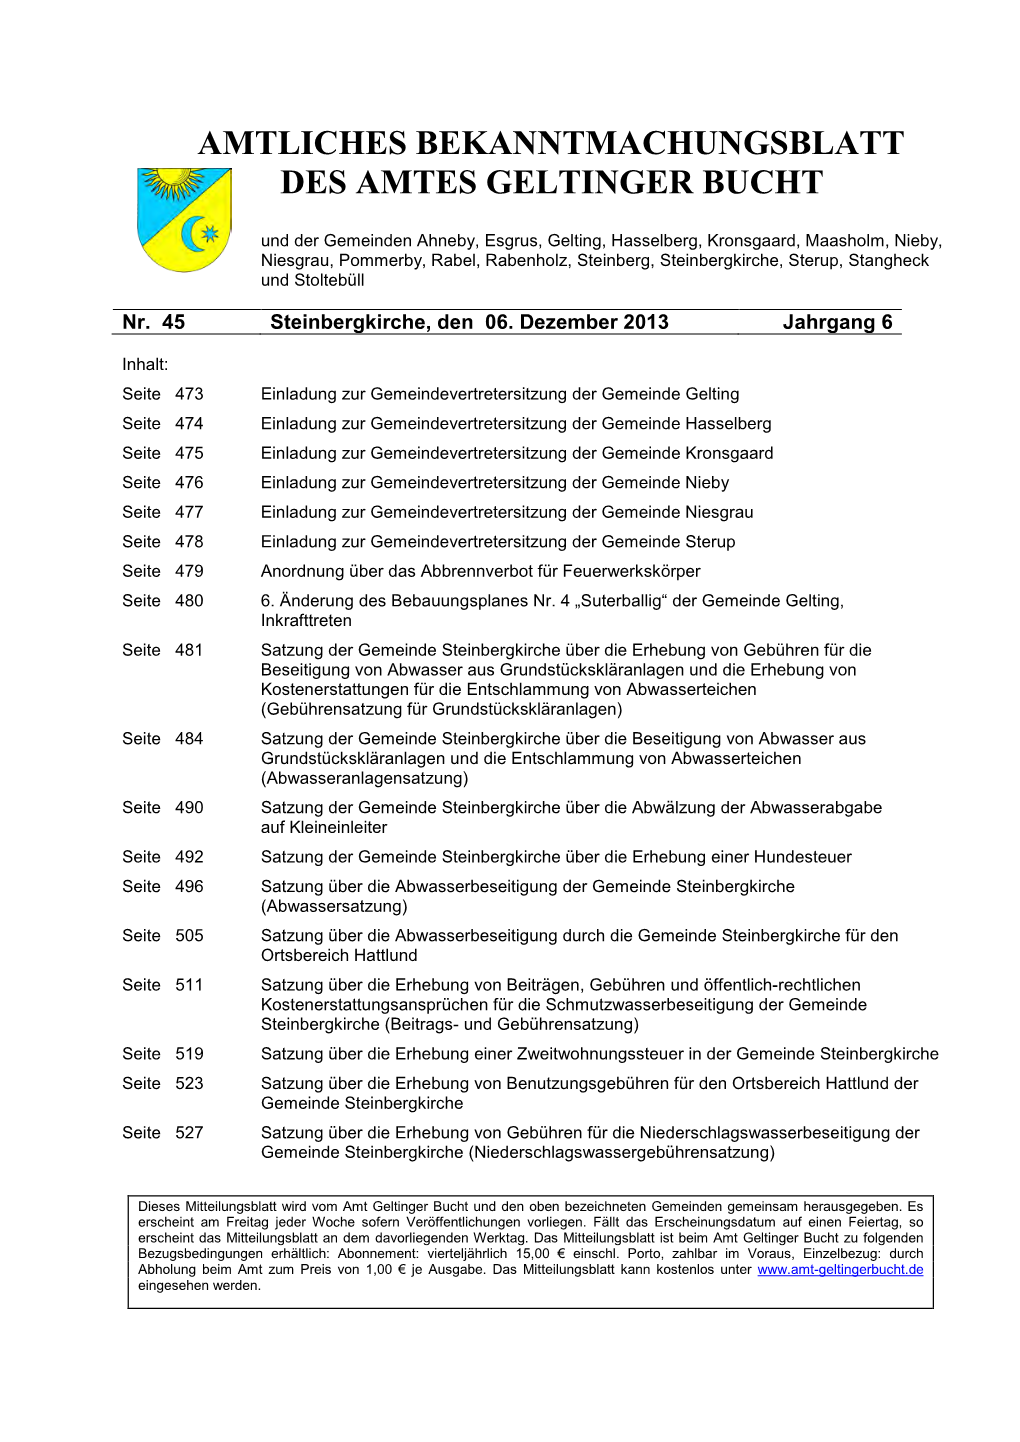 Amtliches Bekanntmachungsblatt Des Amtes Geltinger Bucht Nr. 45/2013 Vom 06.12.2013